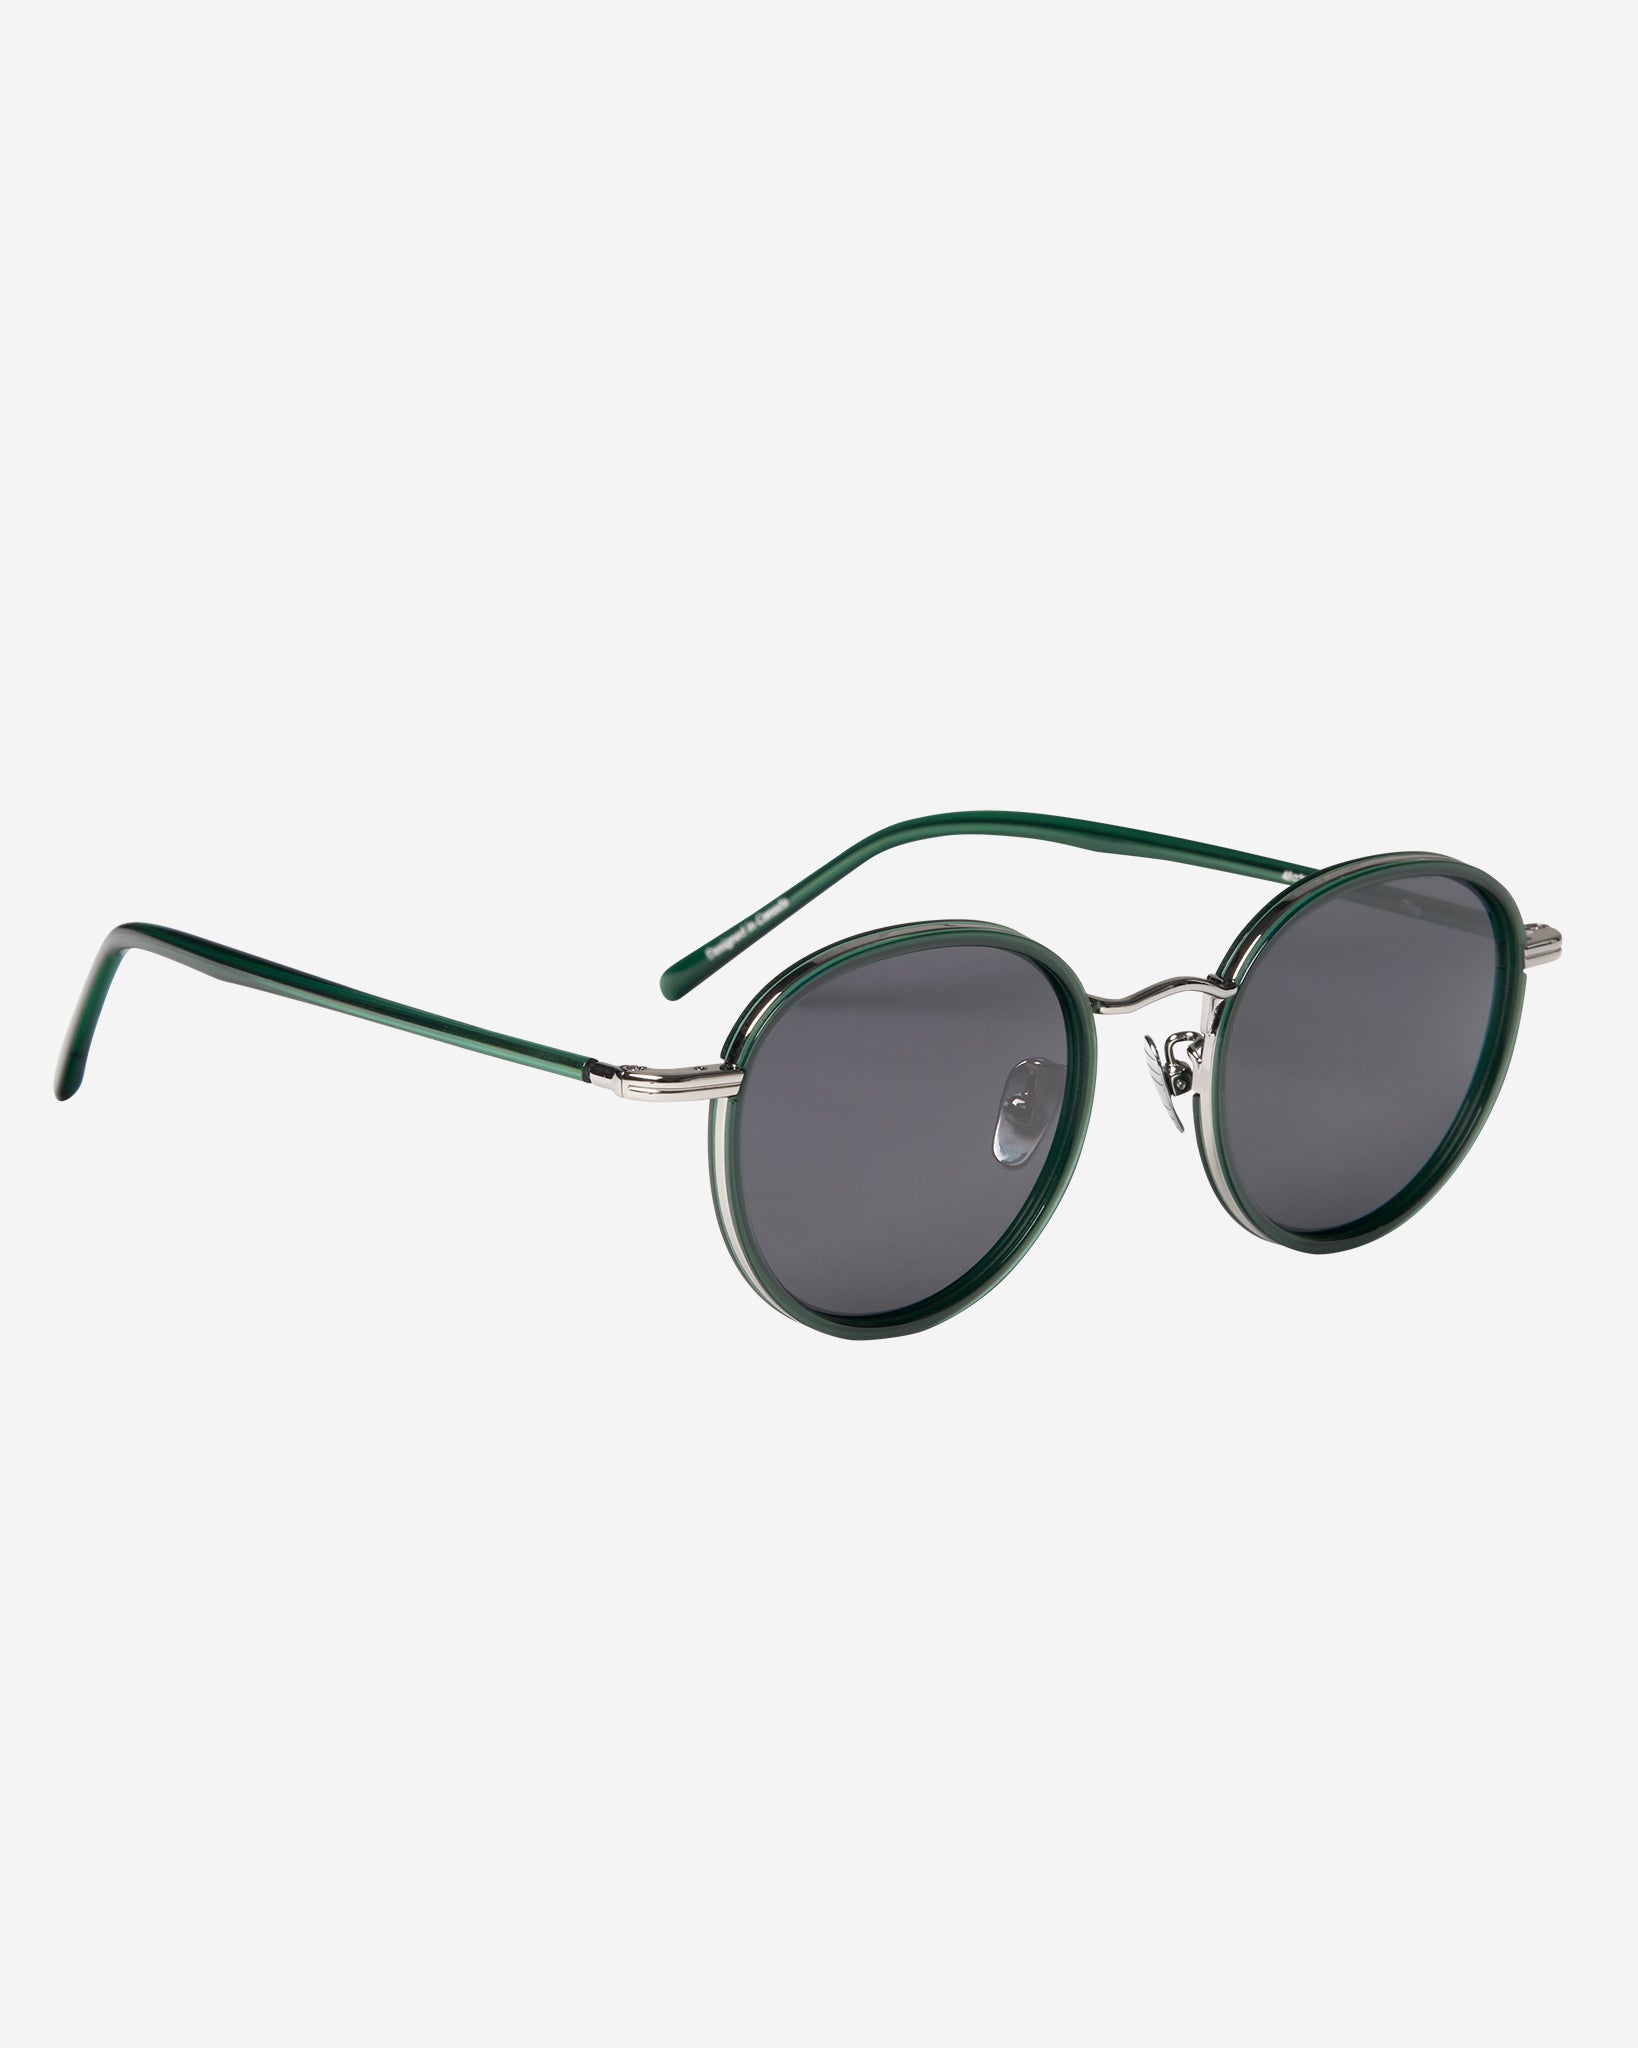 Plea Sunglasses - Green/Silver